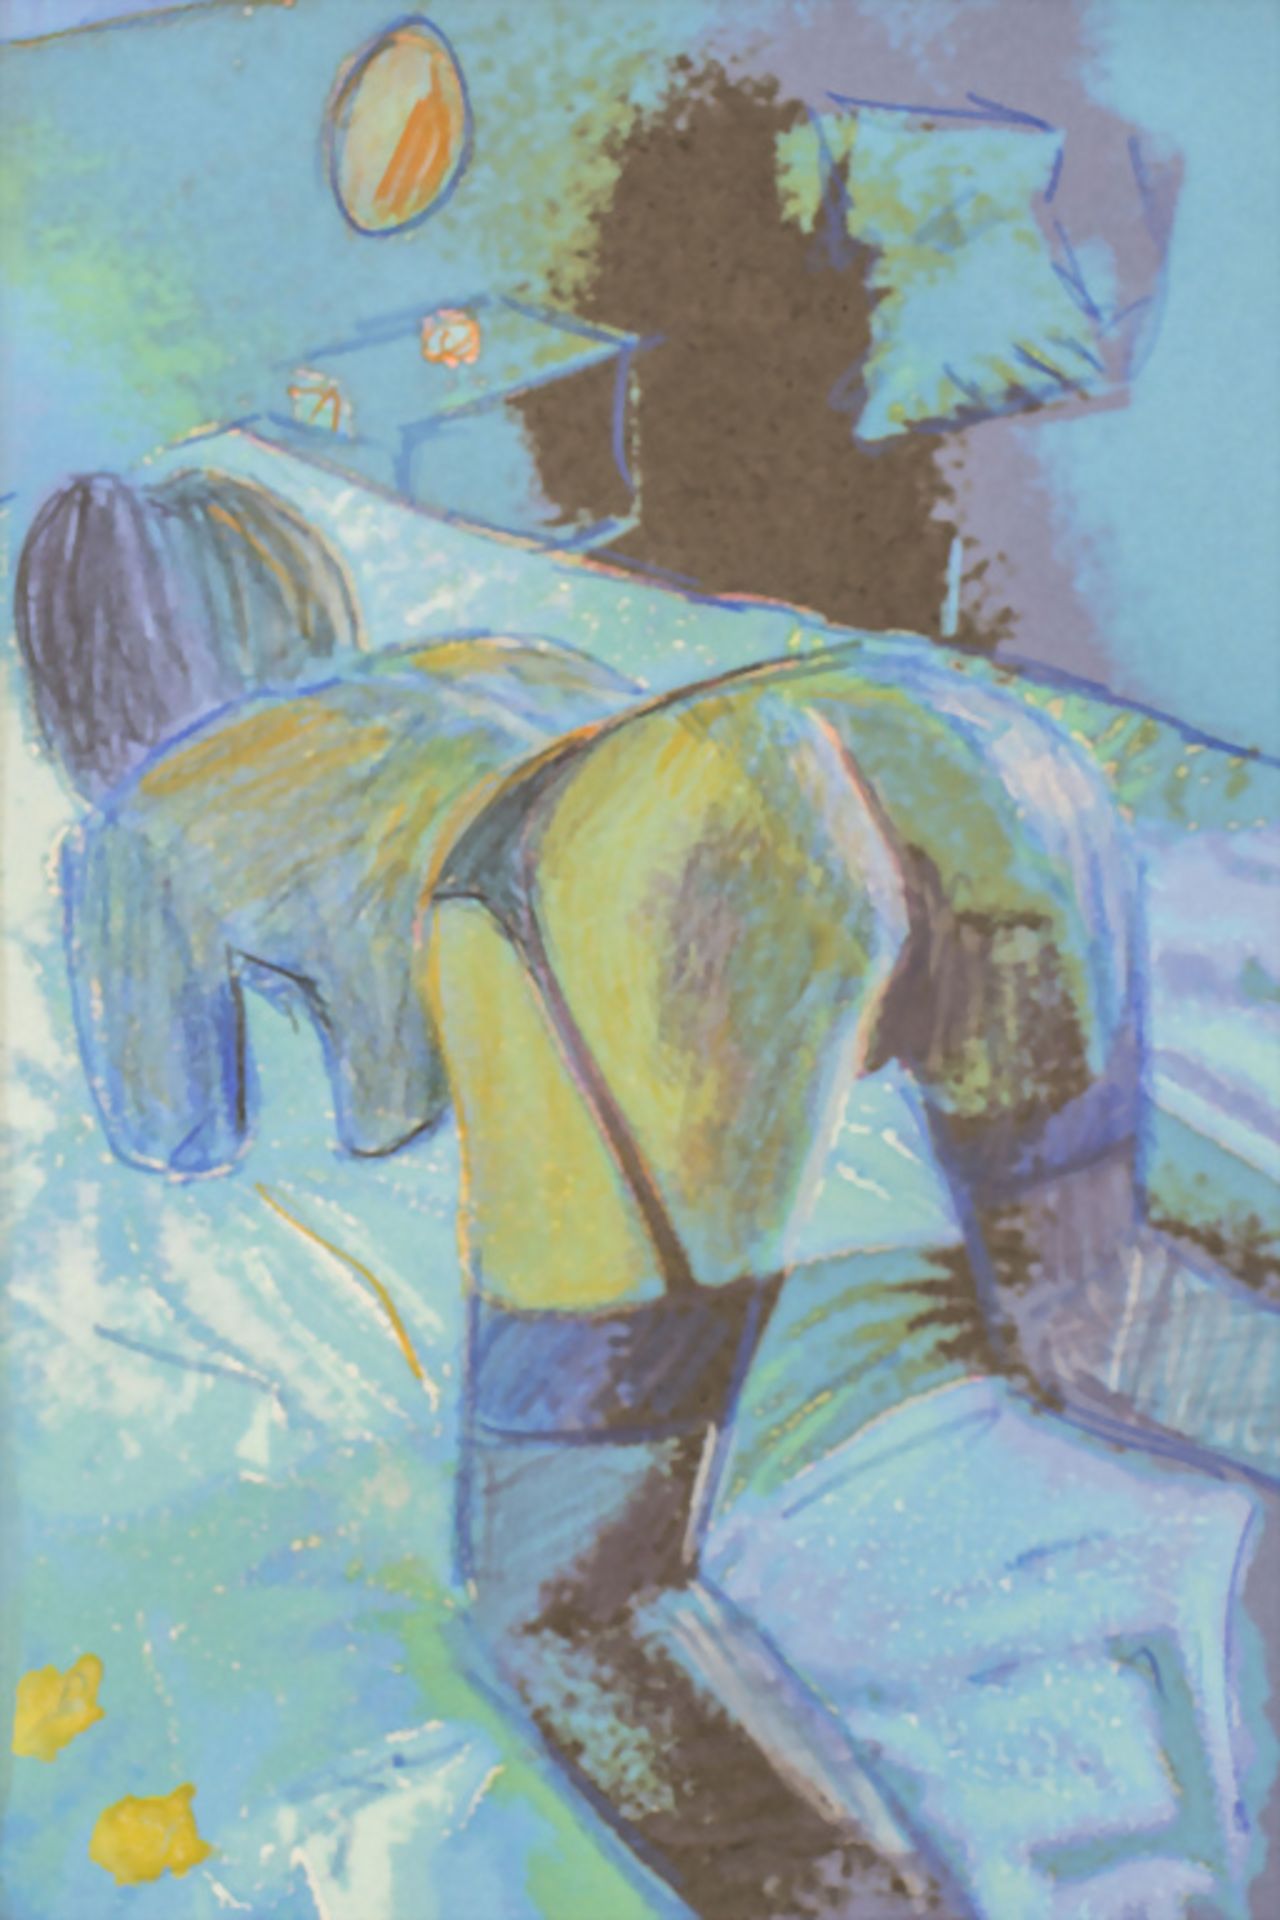 Unbekannter Signaturist des 20. Jh., 'Erotik in Blau' / 'Erotic in blue' - Bild 4 aus 5